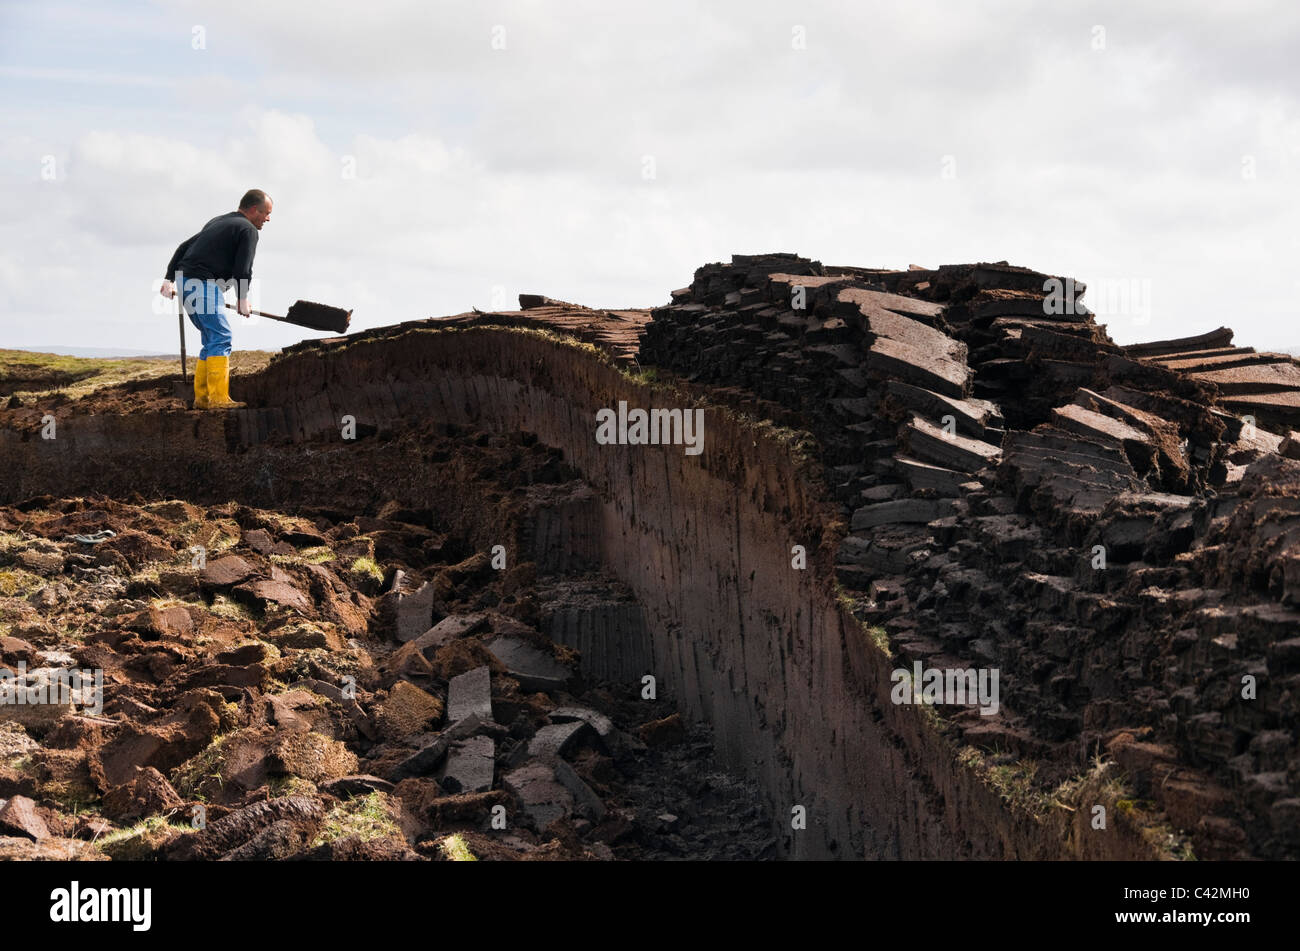 Coupe homme pour des blocs de tourbe combustible traditionnel sur les îles Shetland, Écosse, Royaume-Uni, Angleterre Banque D'Images